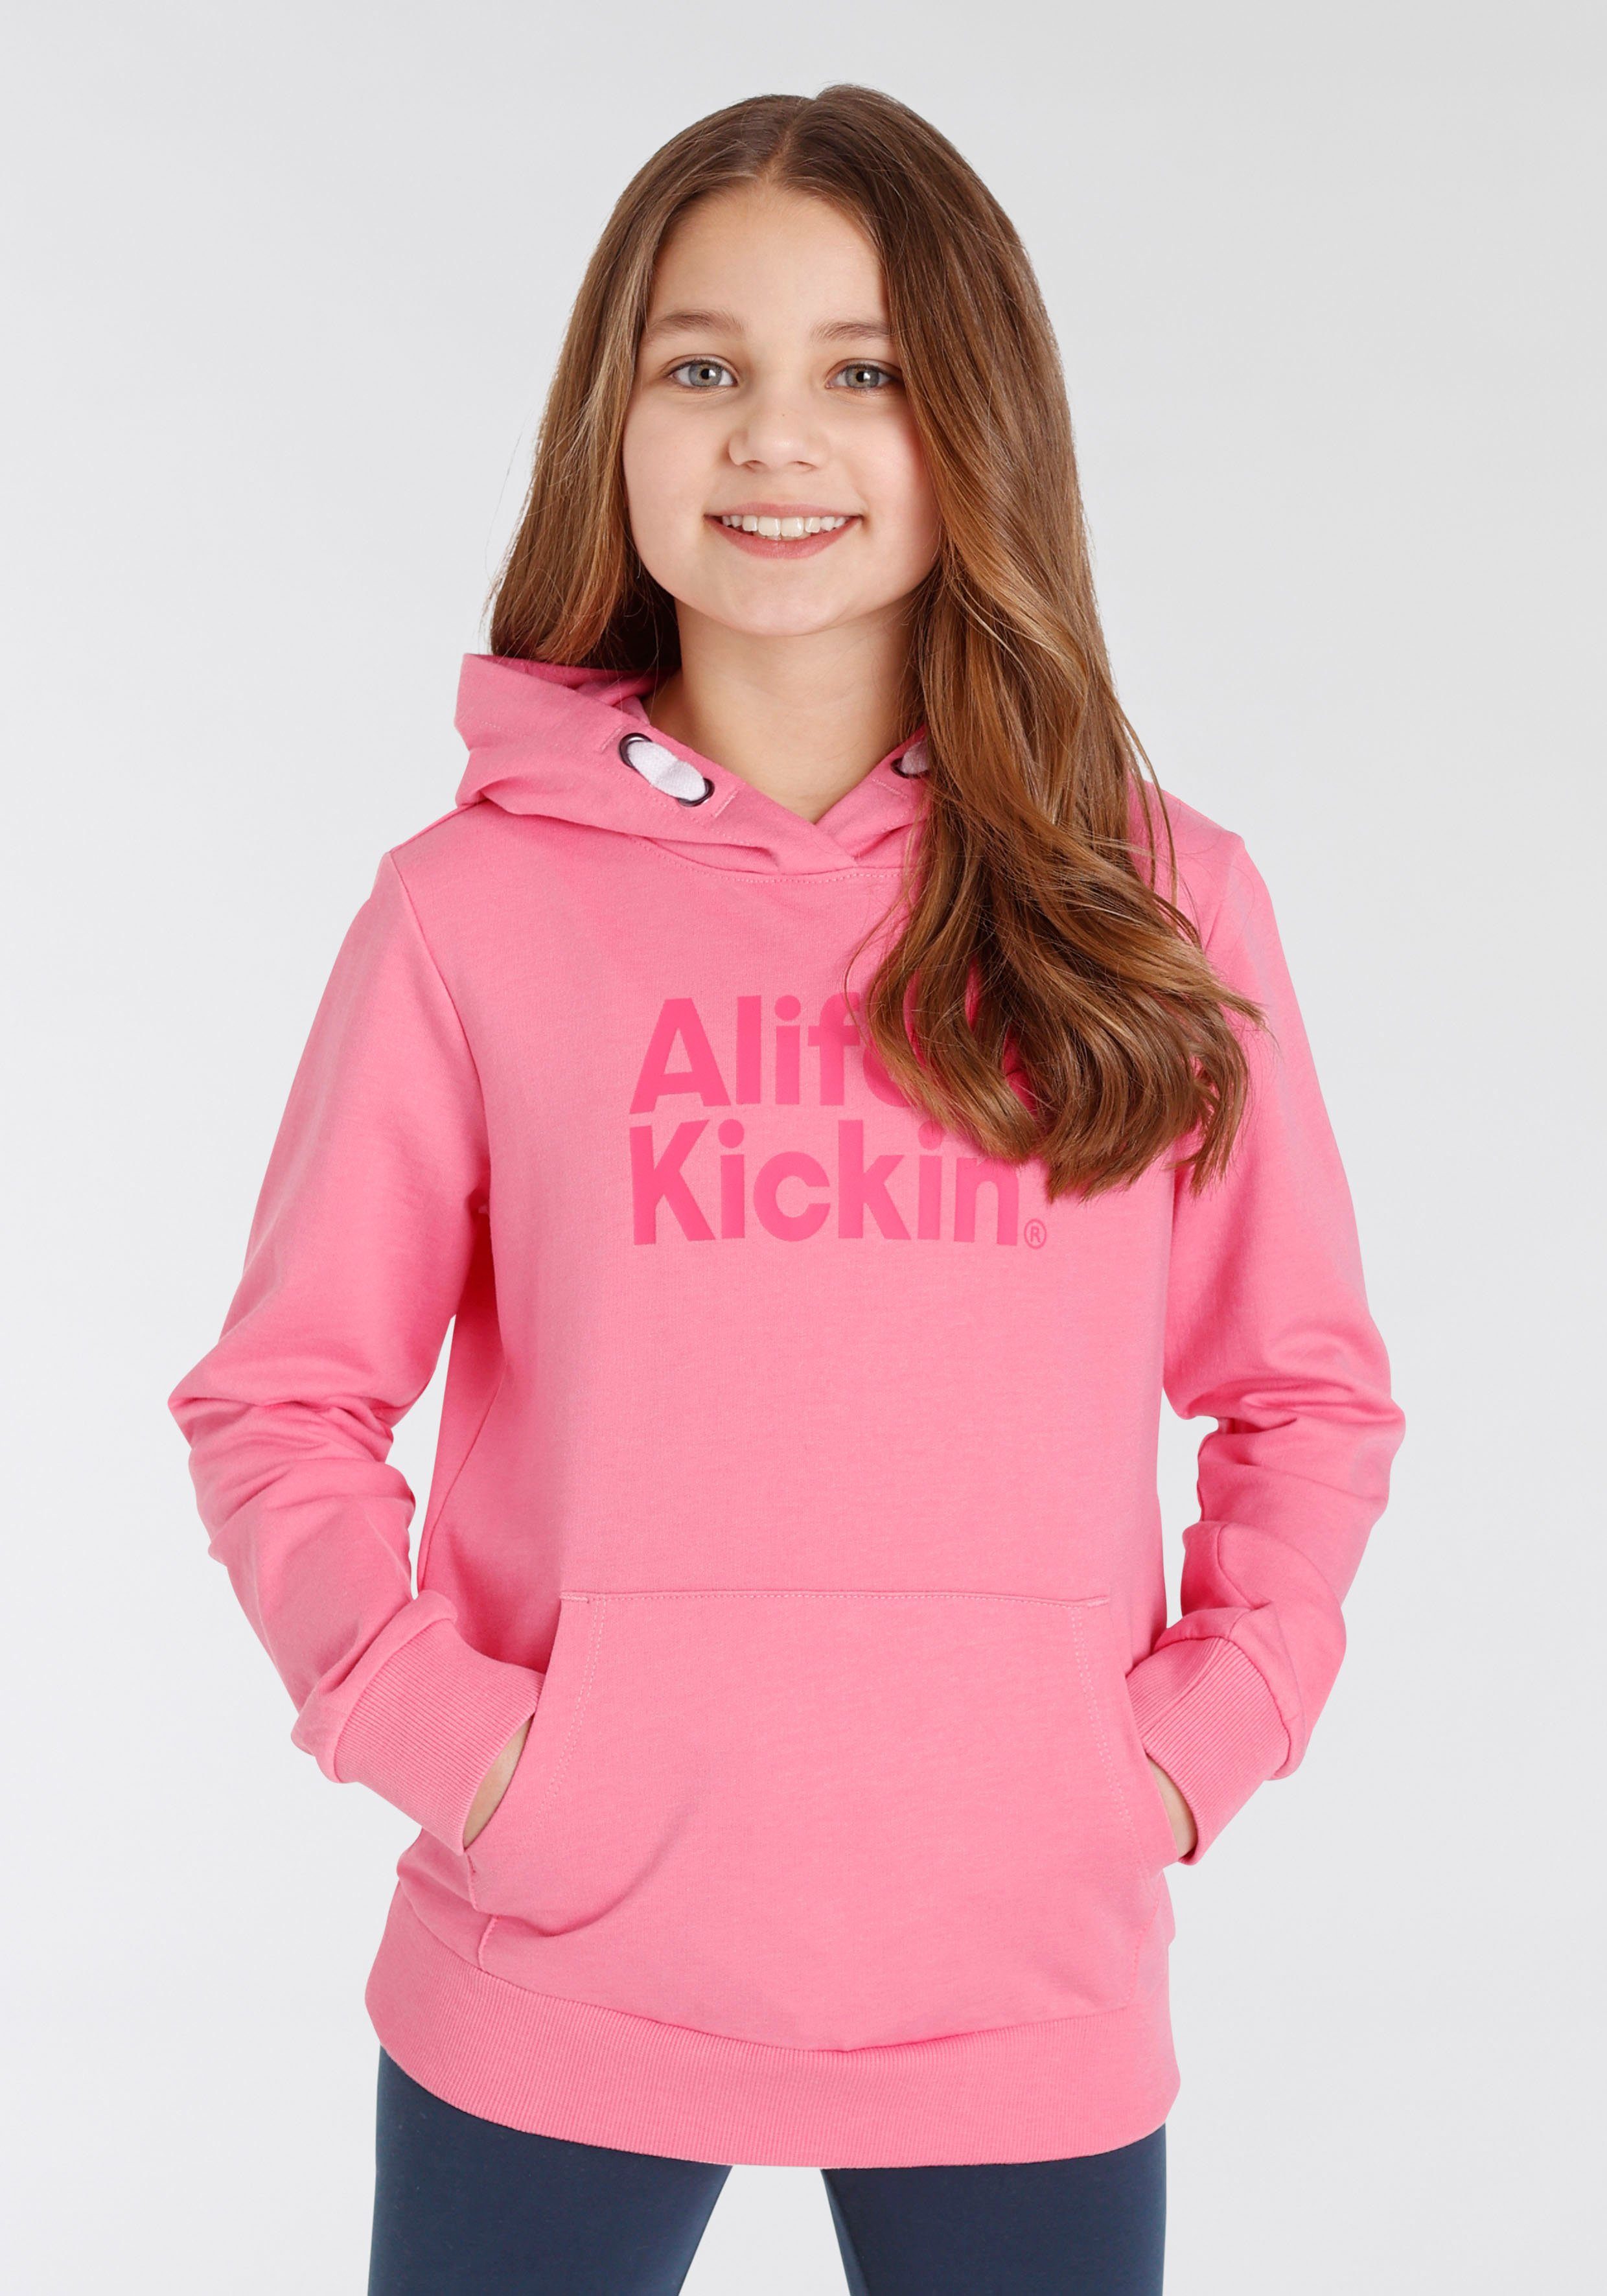 Alife & Kapuzensweatshirt MARKE! Logo Druck Alife Kickin NEUE für Kids. Kickin mit &